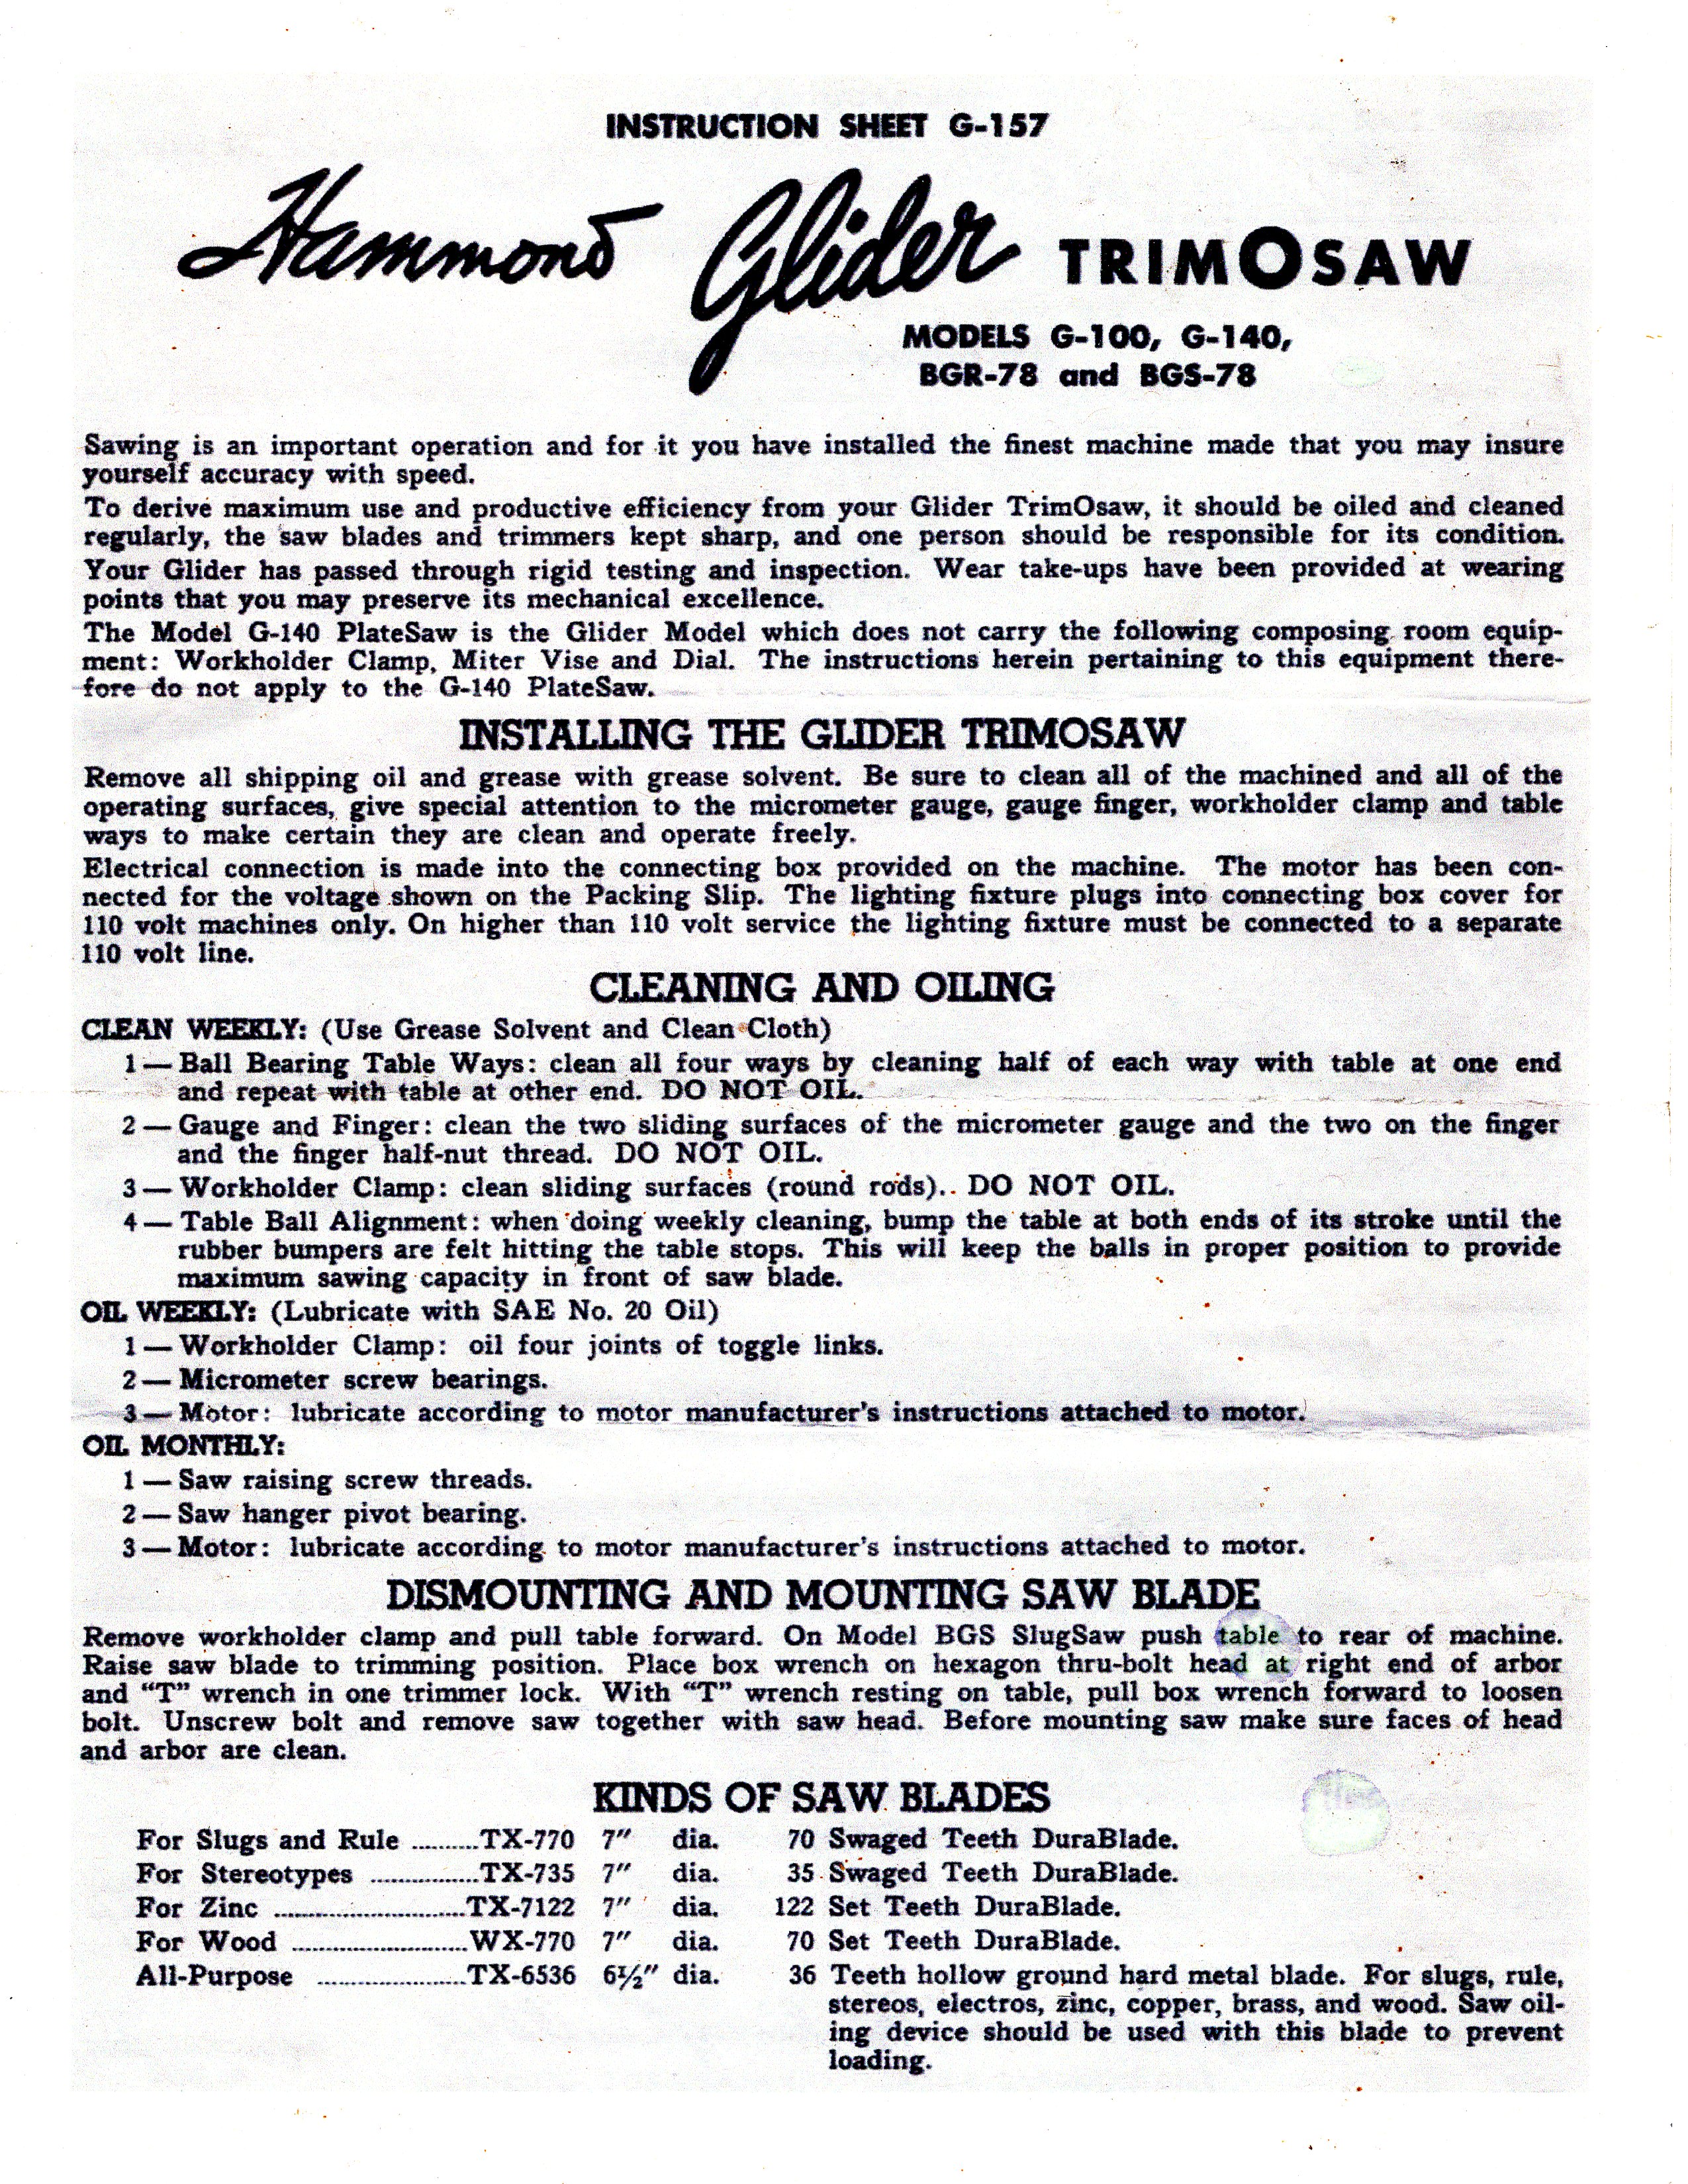 Hammond Glider Saws instruction sheet -
                          front